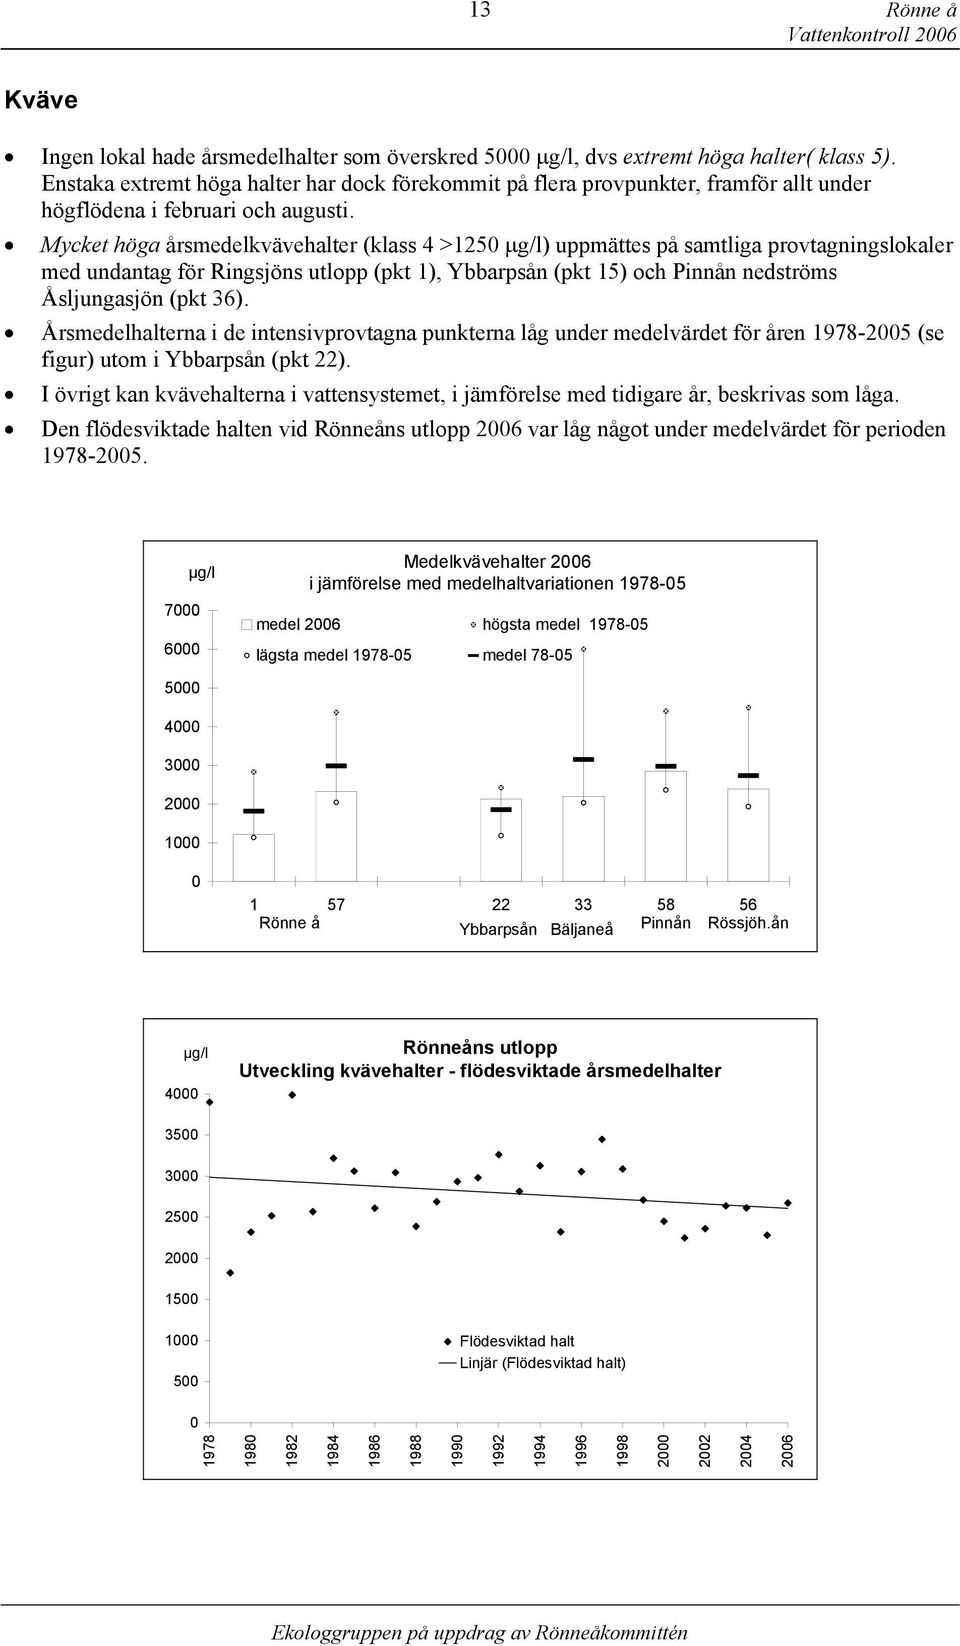 Mycket höga årsmedelkvävehalter klass 4 >125 µg/l) uppmättes på samtliga provtagningslokaler med undantag för Ringsjöns utlopp pkt 1), Ybbarpsån pkt 15) och Pinnån nedströms Åsljungasjön pkt 36).